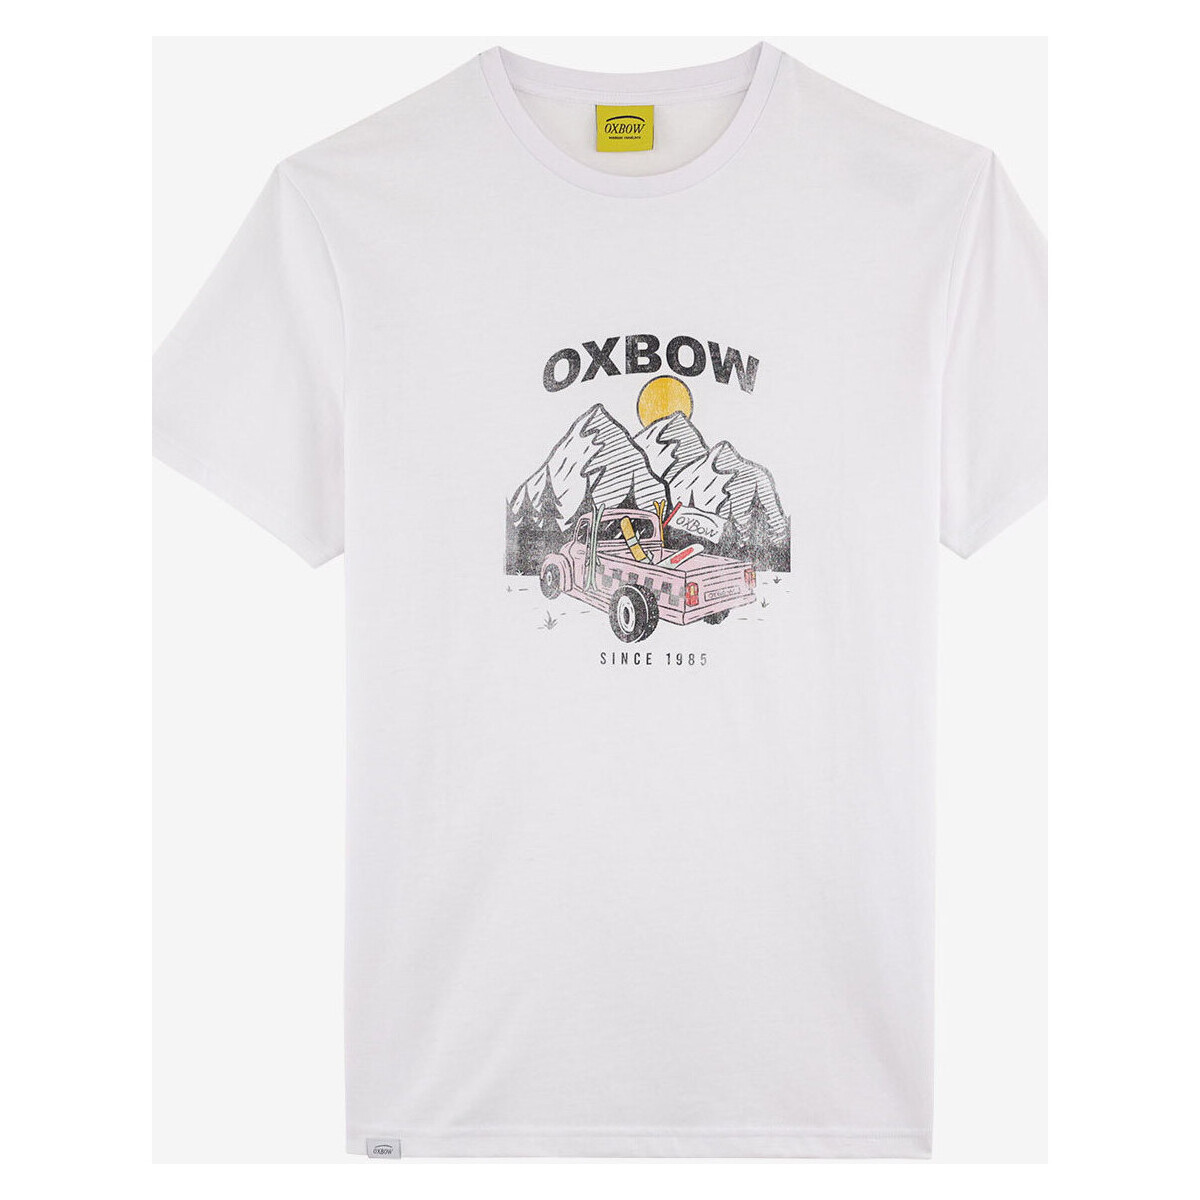 Vêtements Homme T-shirts manches courtes Oxbow Tee-shirt manches courtes imprimé P2TELEKAR Blanc